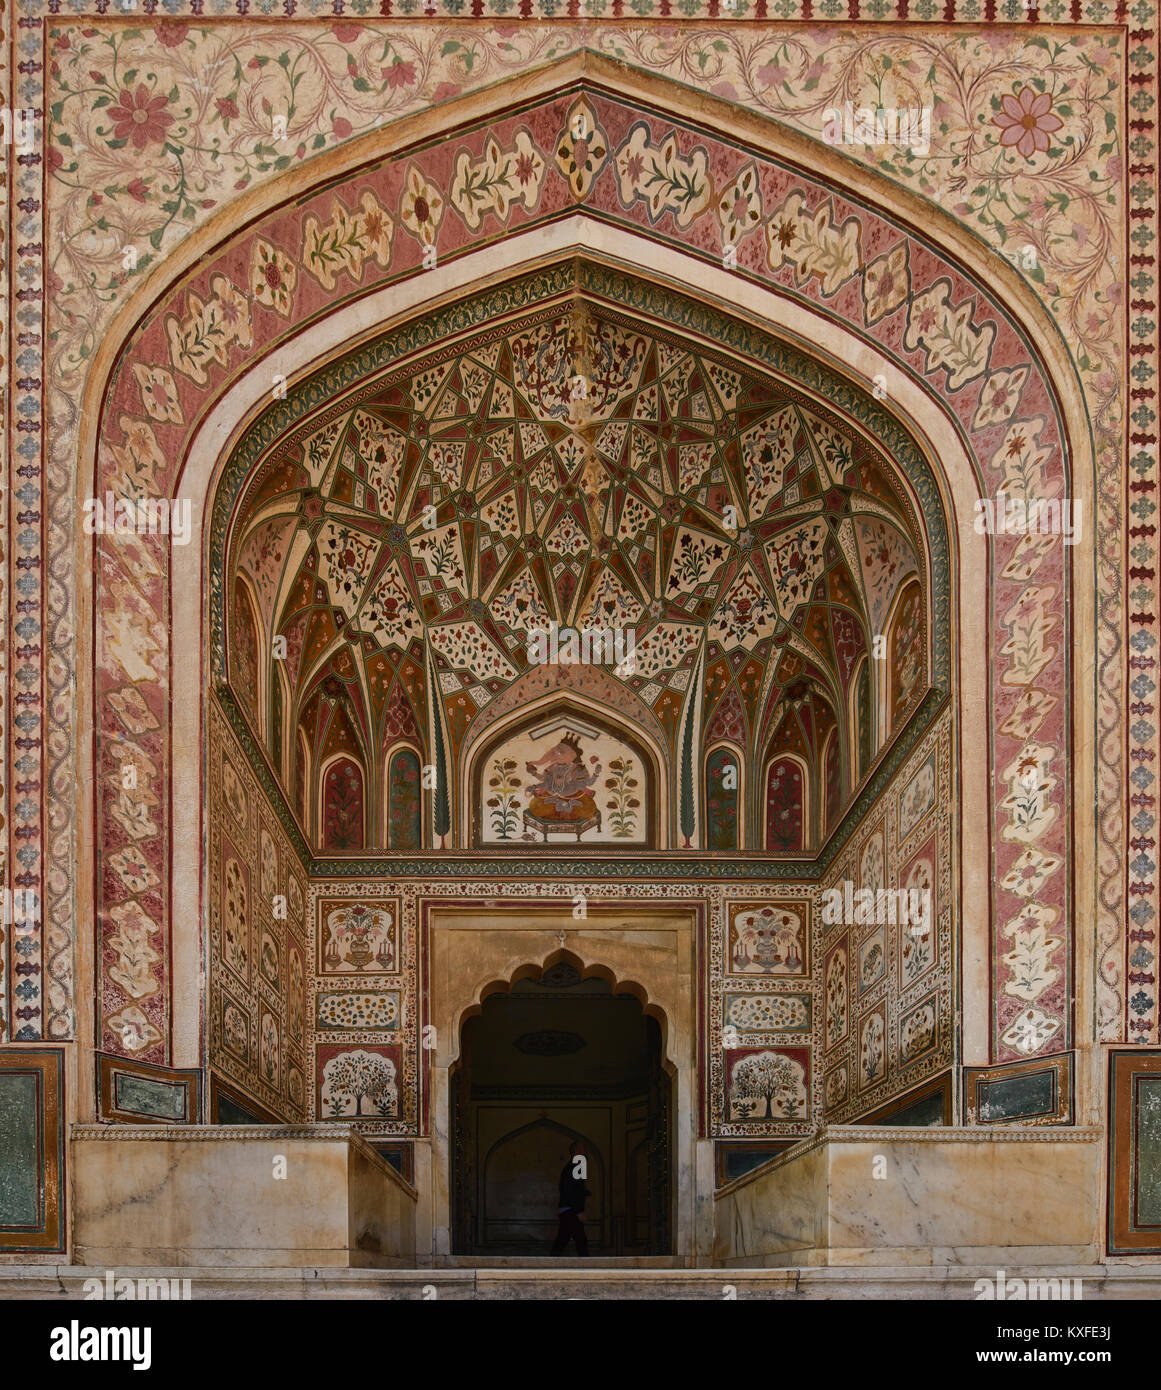 Sheesh Mahal - Mirrored Palace at Amer Fort, Jiapur, Rajasthan, India Stock Photo